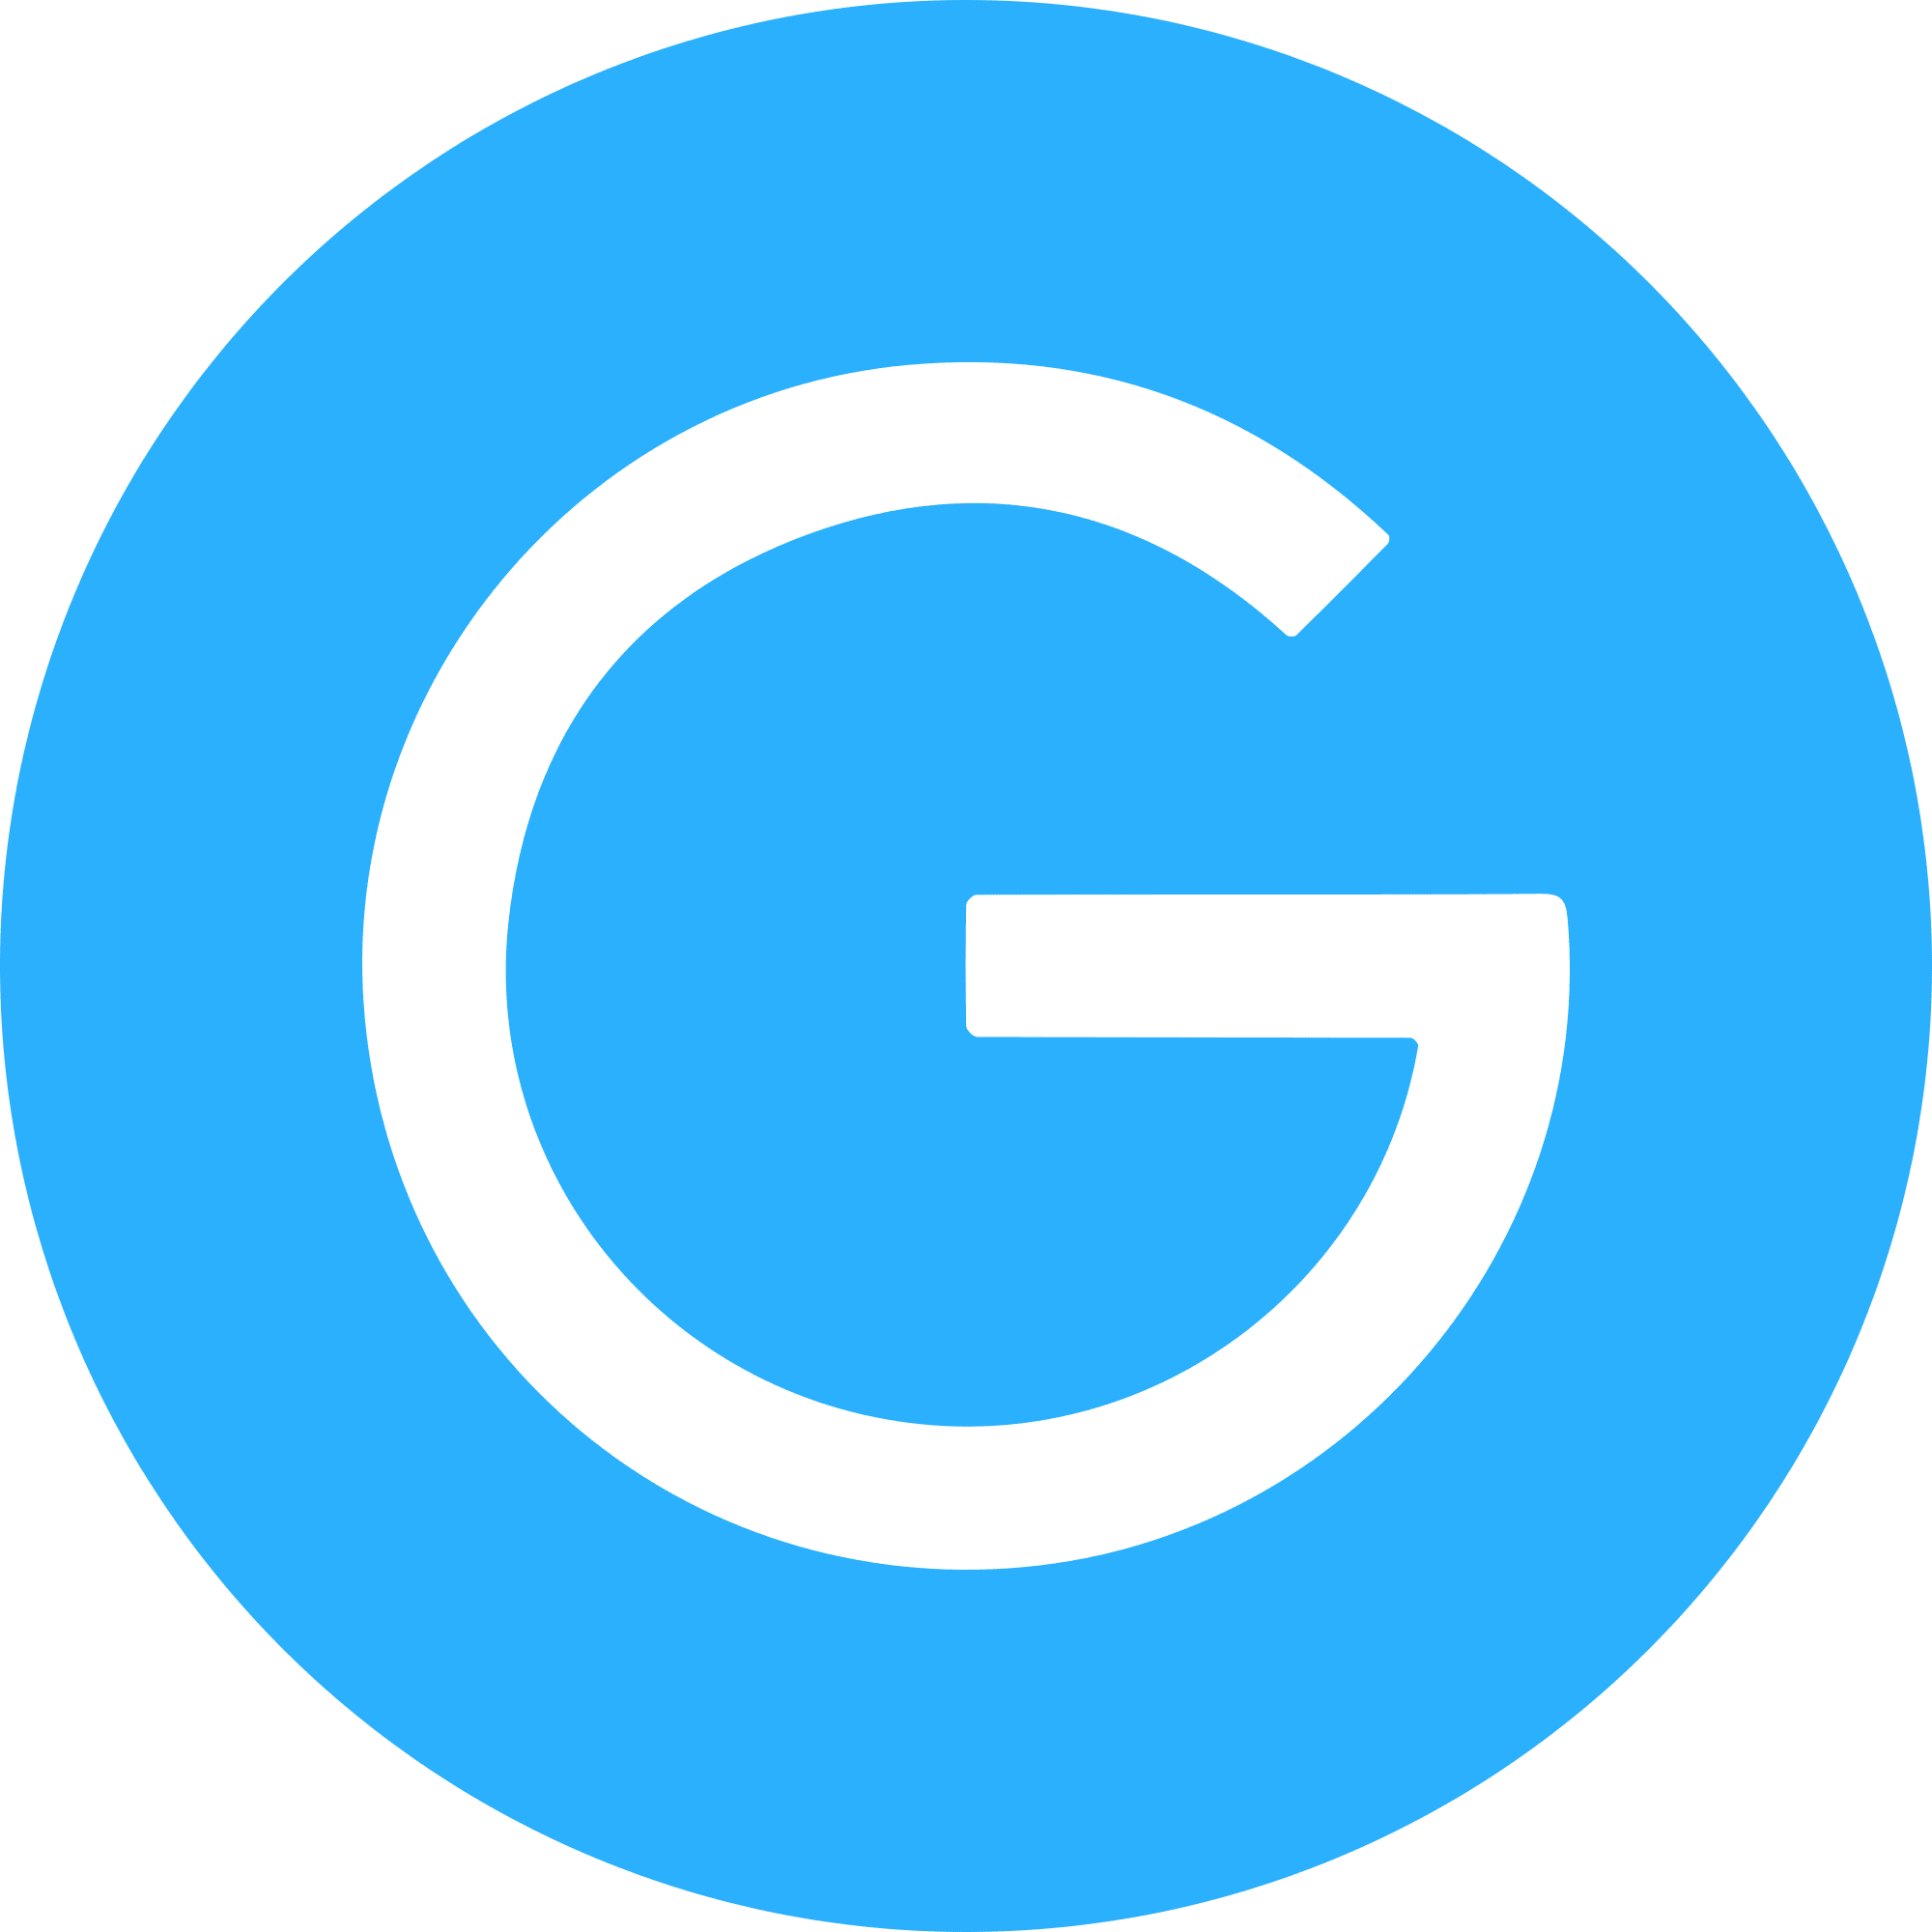 Gulden logo in png format